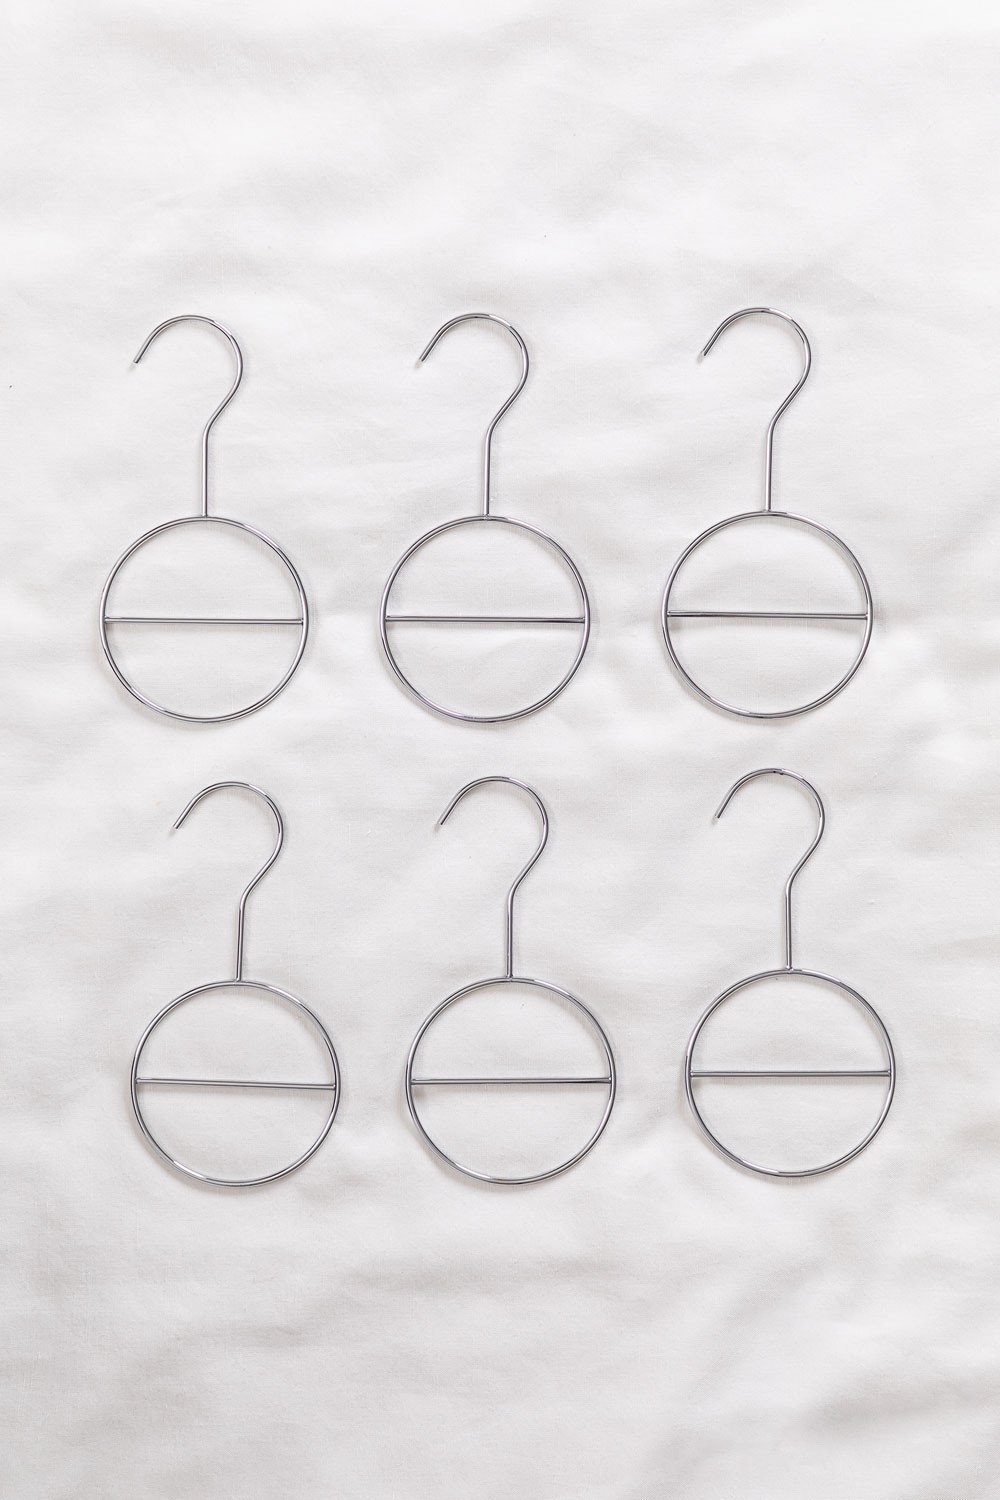 Set van 6 Metalen hangers voor accessoires Gärde, galerij beeld 1